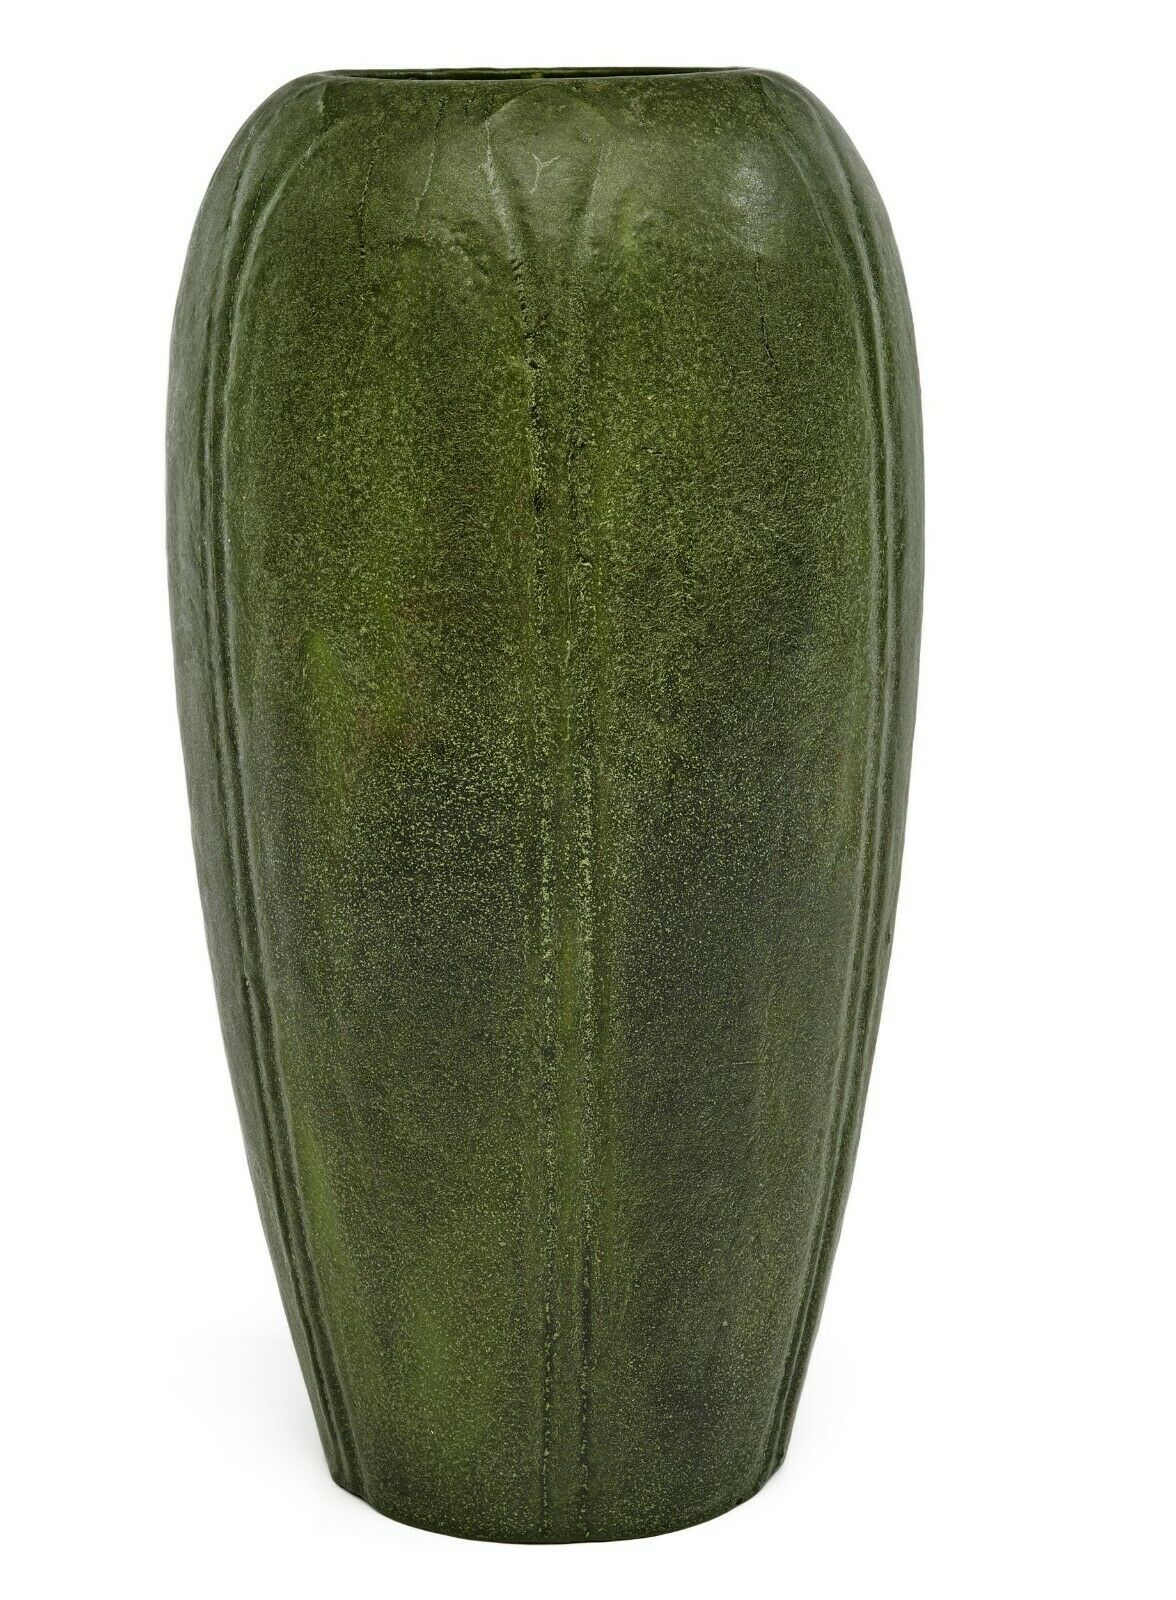 Large Amazing Grueby Vase 11.5"h X 6"dia- Wilhelmina Post (wp)